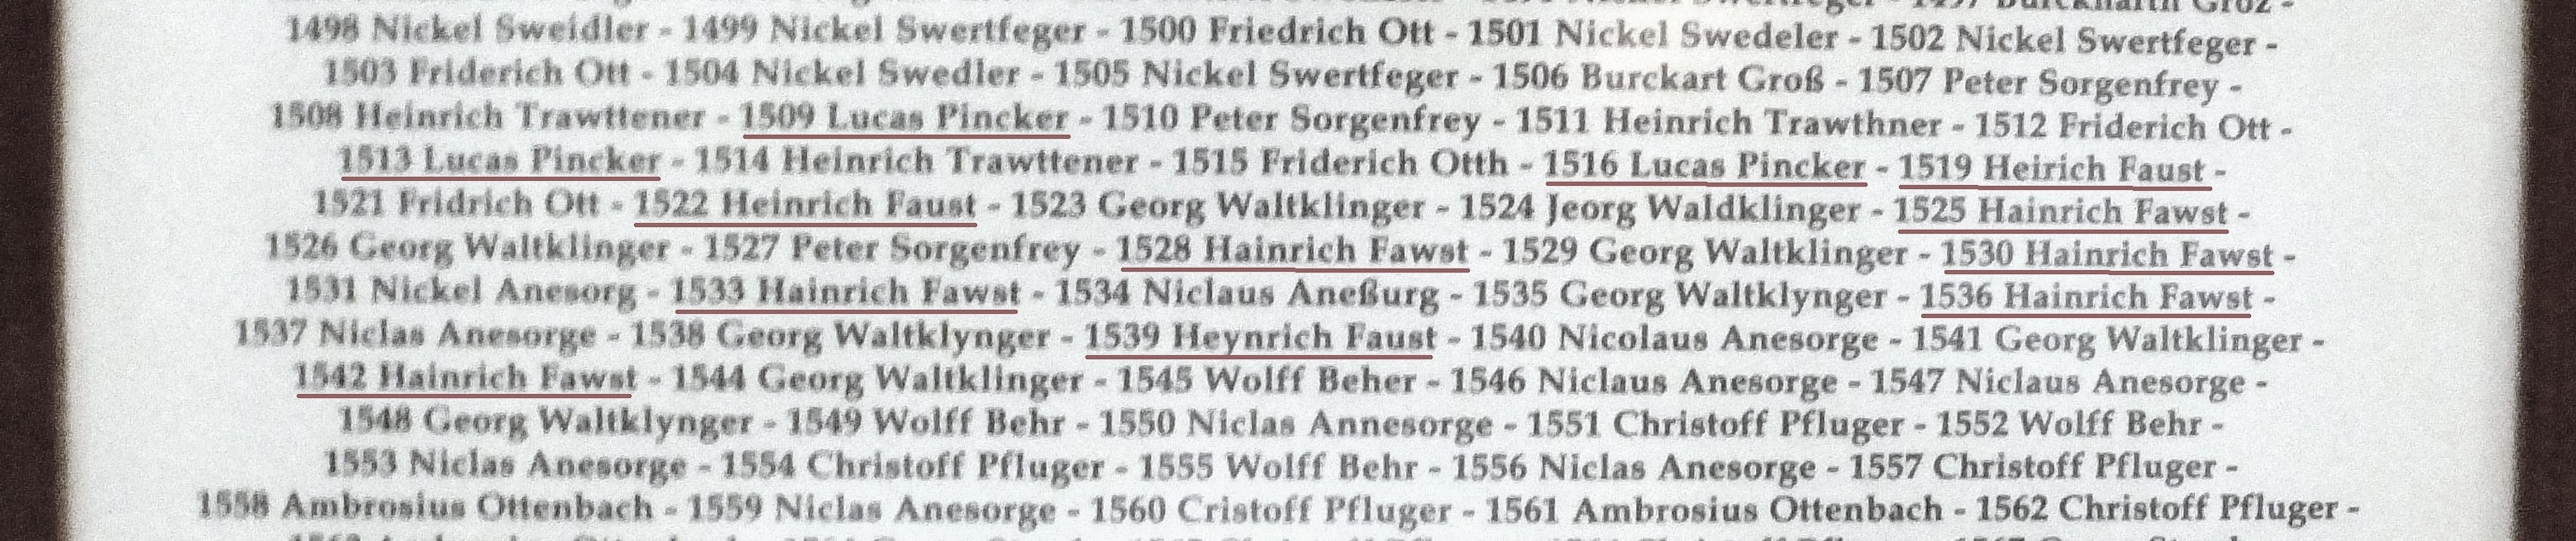 Familienchronik Sachsen Meißen: Liste aller regierenden Bürgermeister der Residenzstadt Meißen auf einer Tafel, angebracht im Rathaus der Stadt.